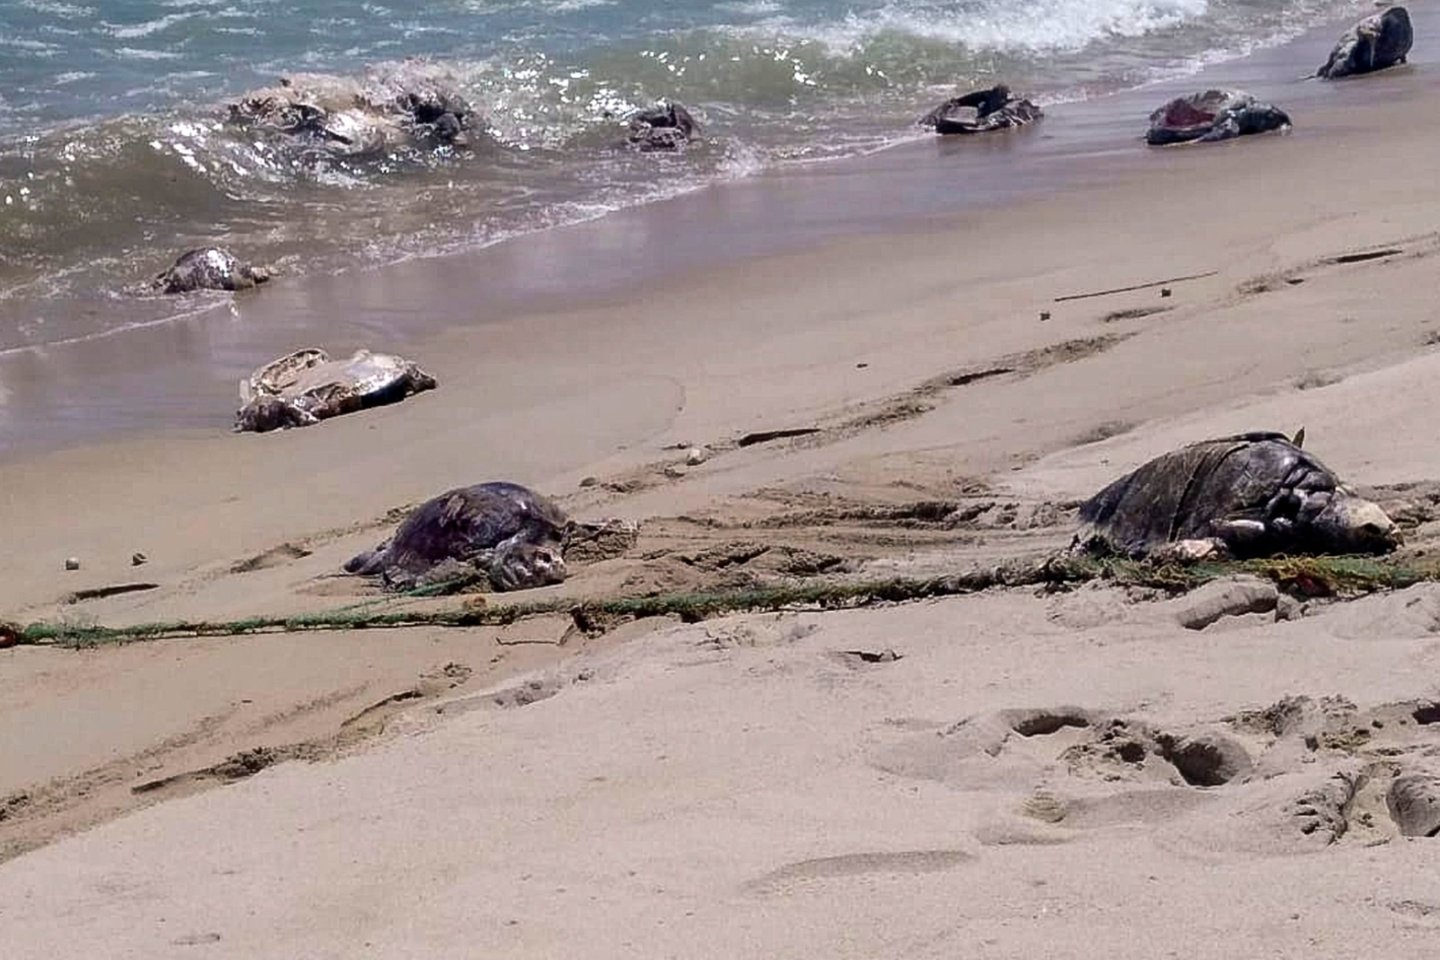  Daugiau kaip 300 jūrinių vėžlių, priklausančių vienai nykstančiai rūšiai, buvo rasti negyvi viename pietų Meksikos paplūdimyje, įsipainioję į draudžiamo tipo žvejybos tinklus, pranešė aplinkosaugos institucijos.<br> AFP/Scanpix nuotr.